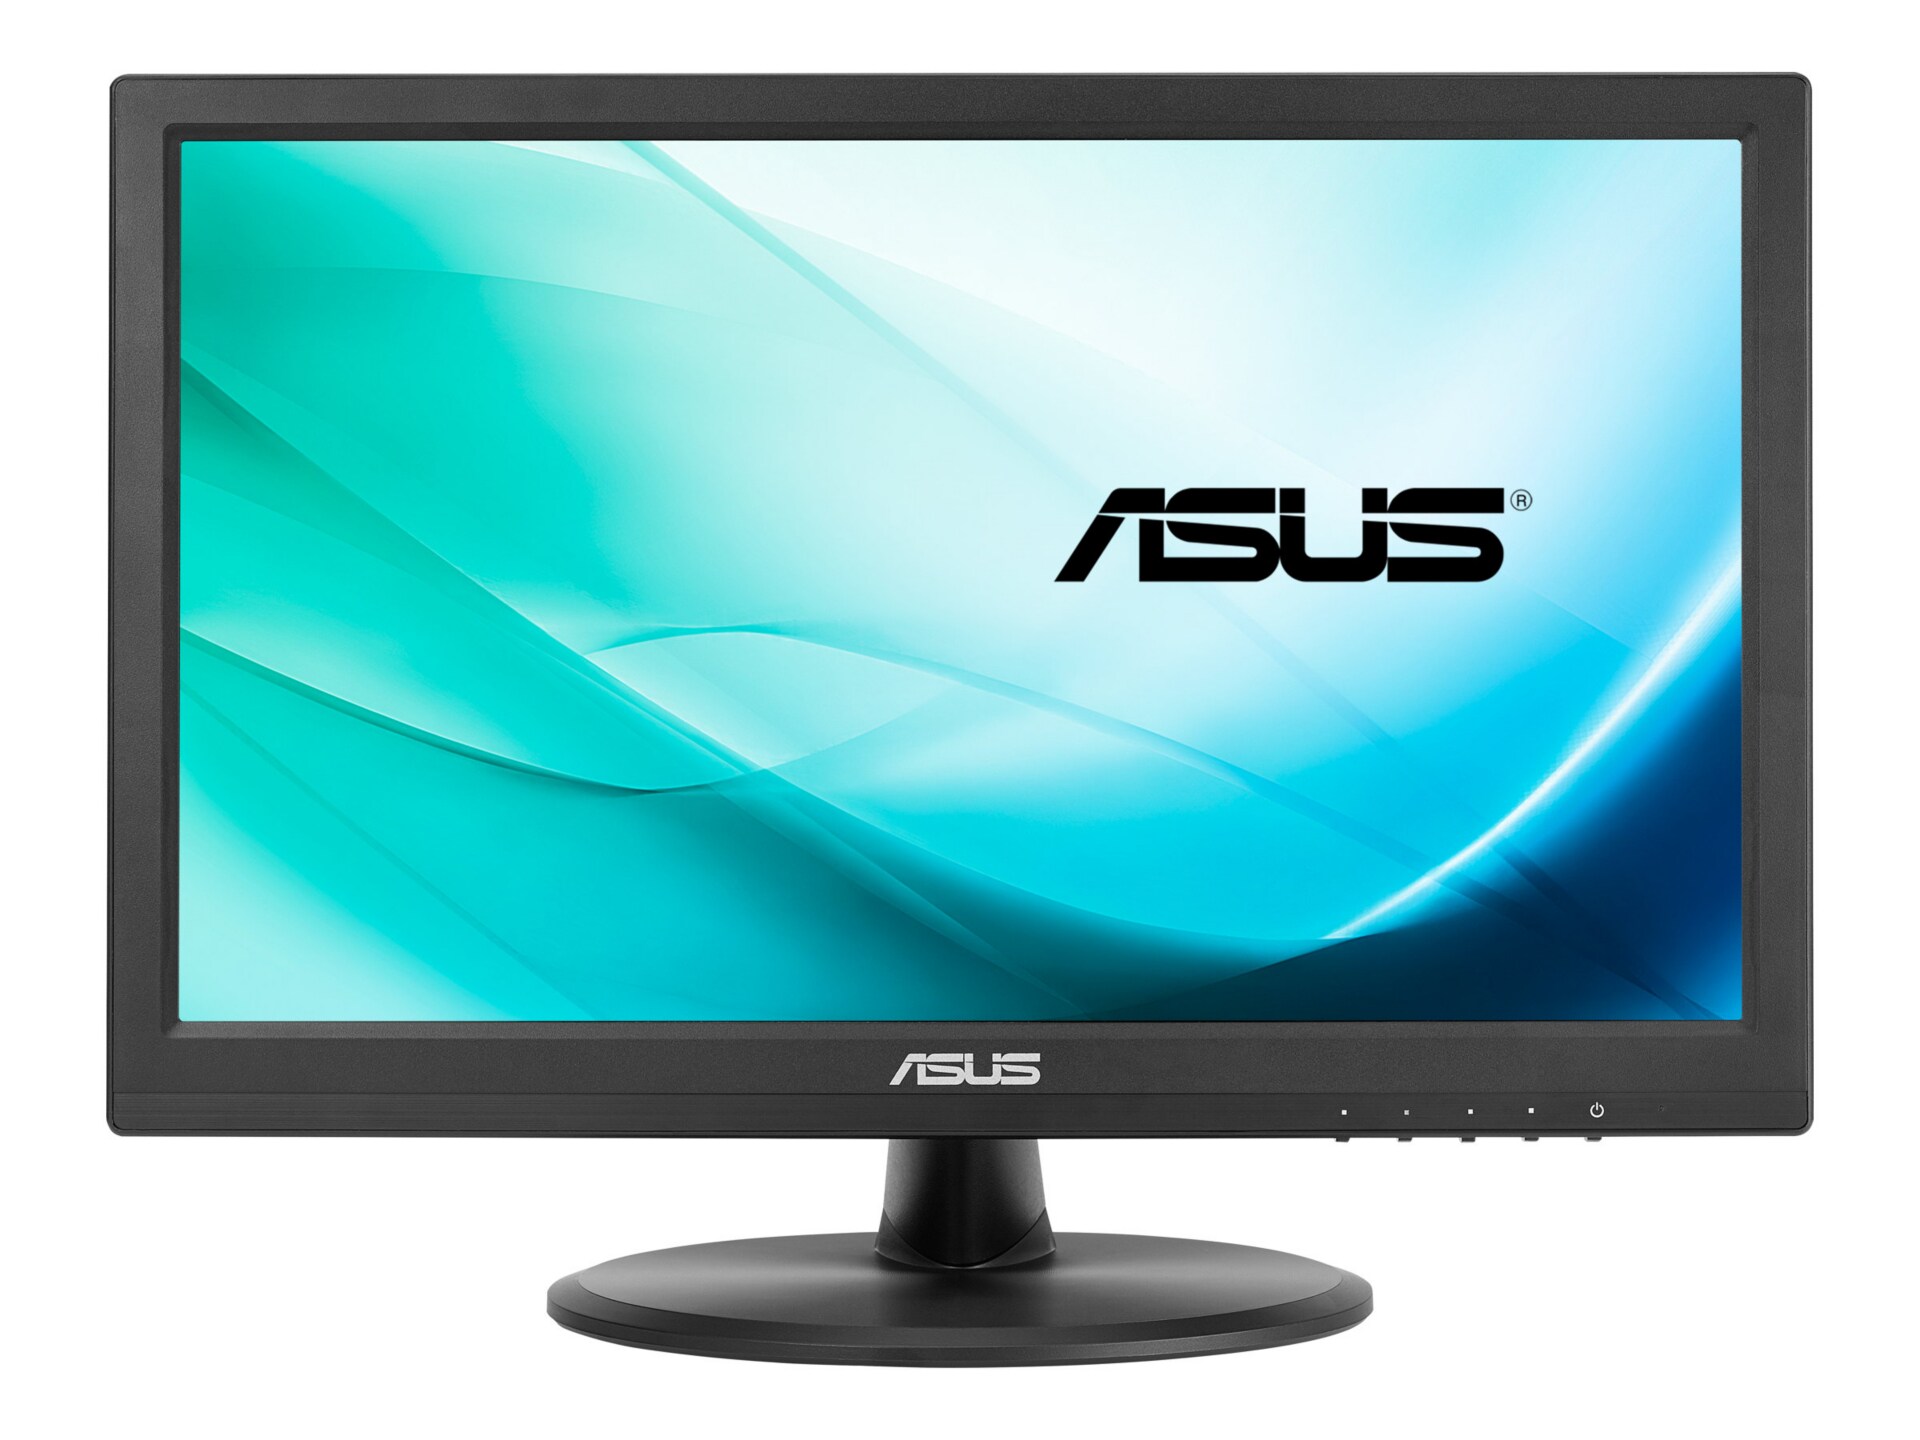 ASUS VT168H - LED monitor - 15.6"